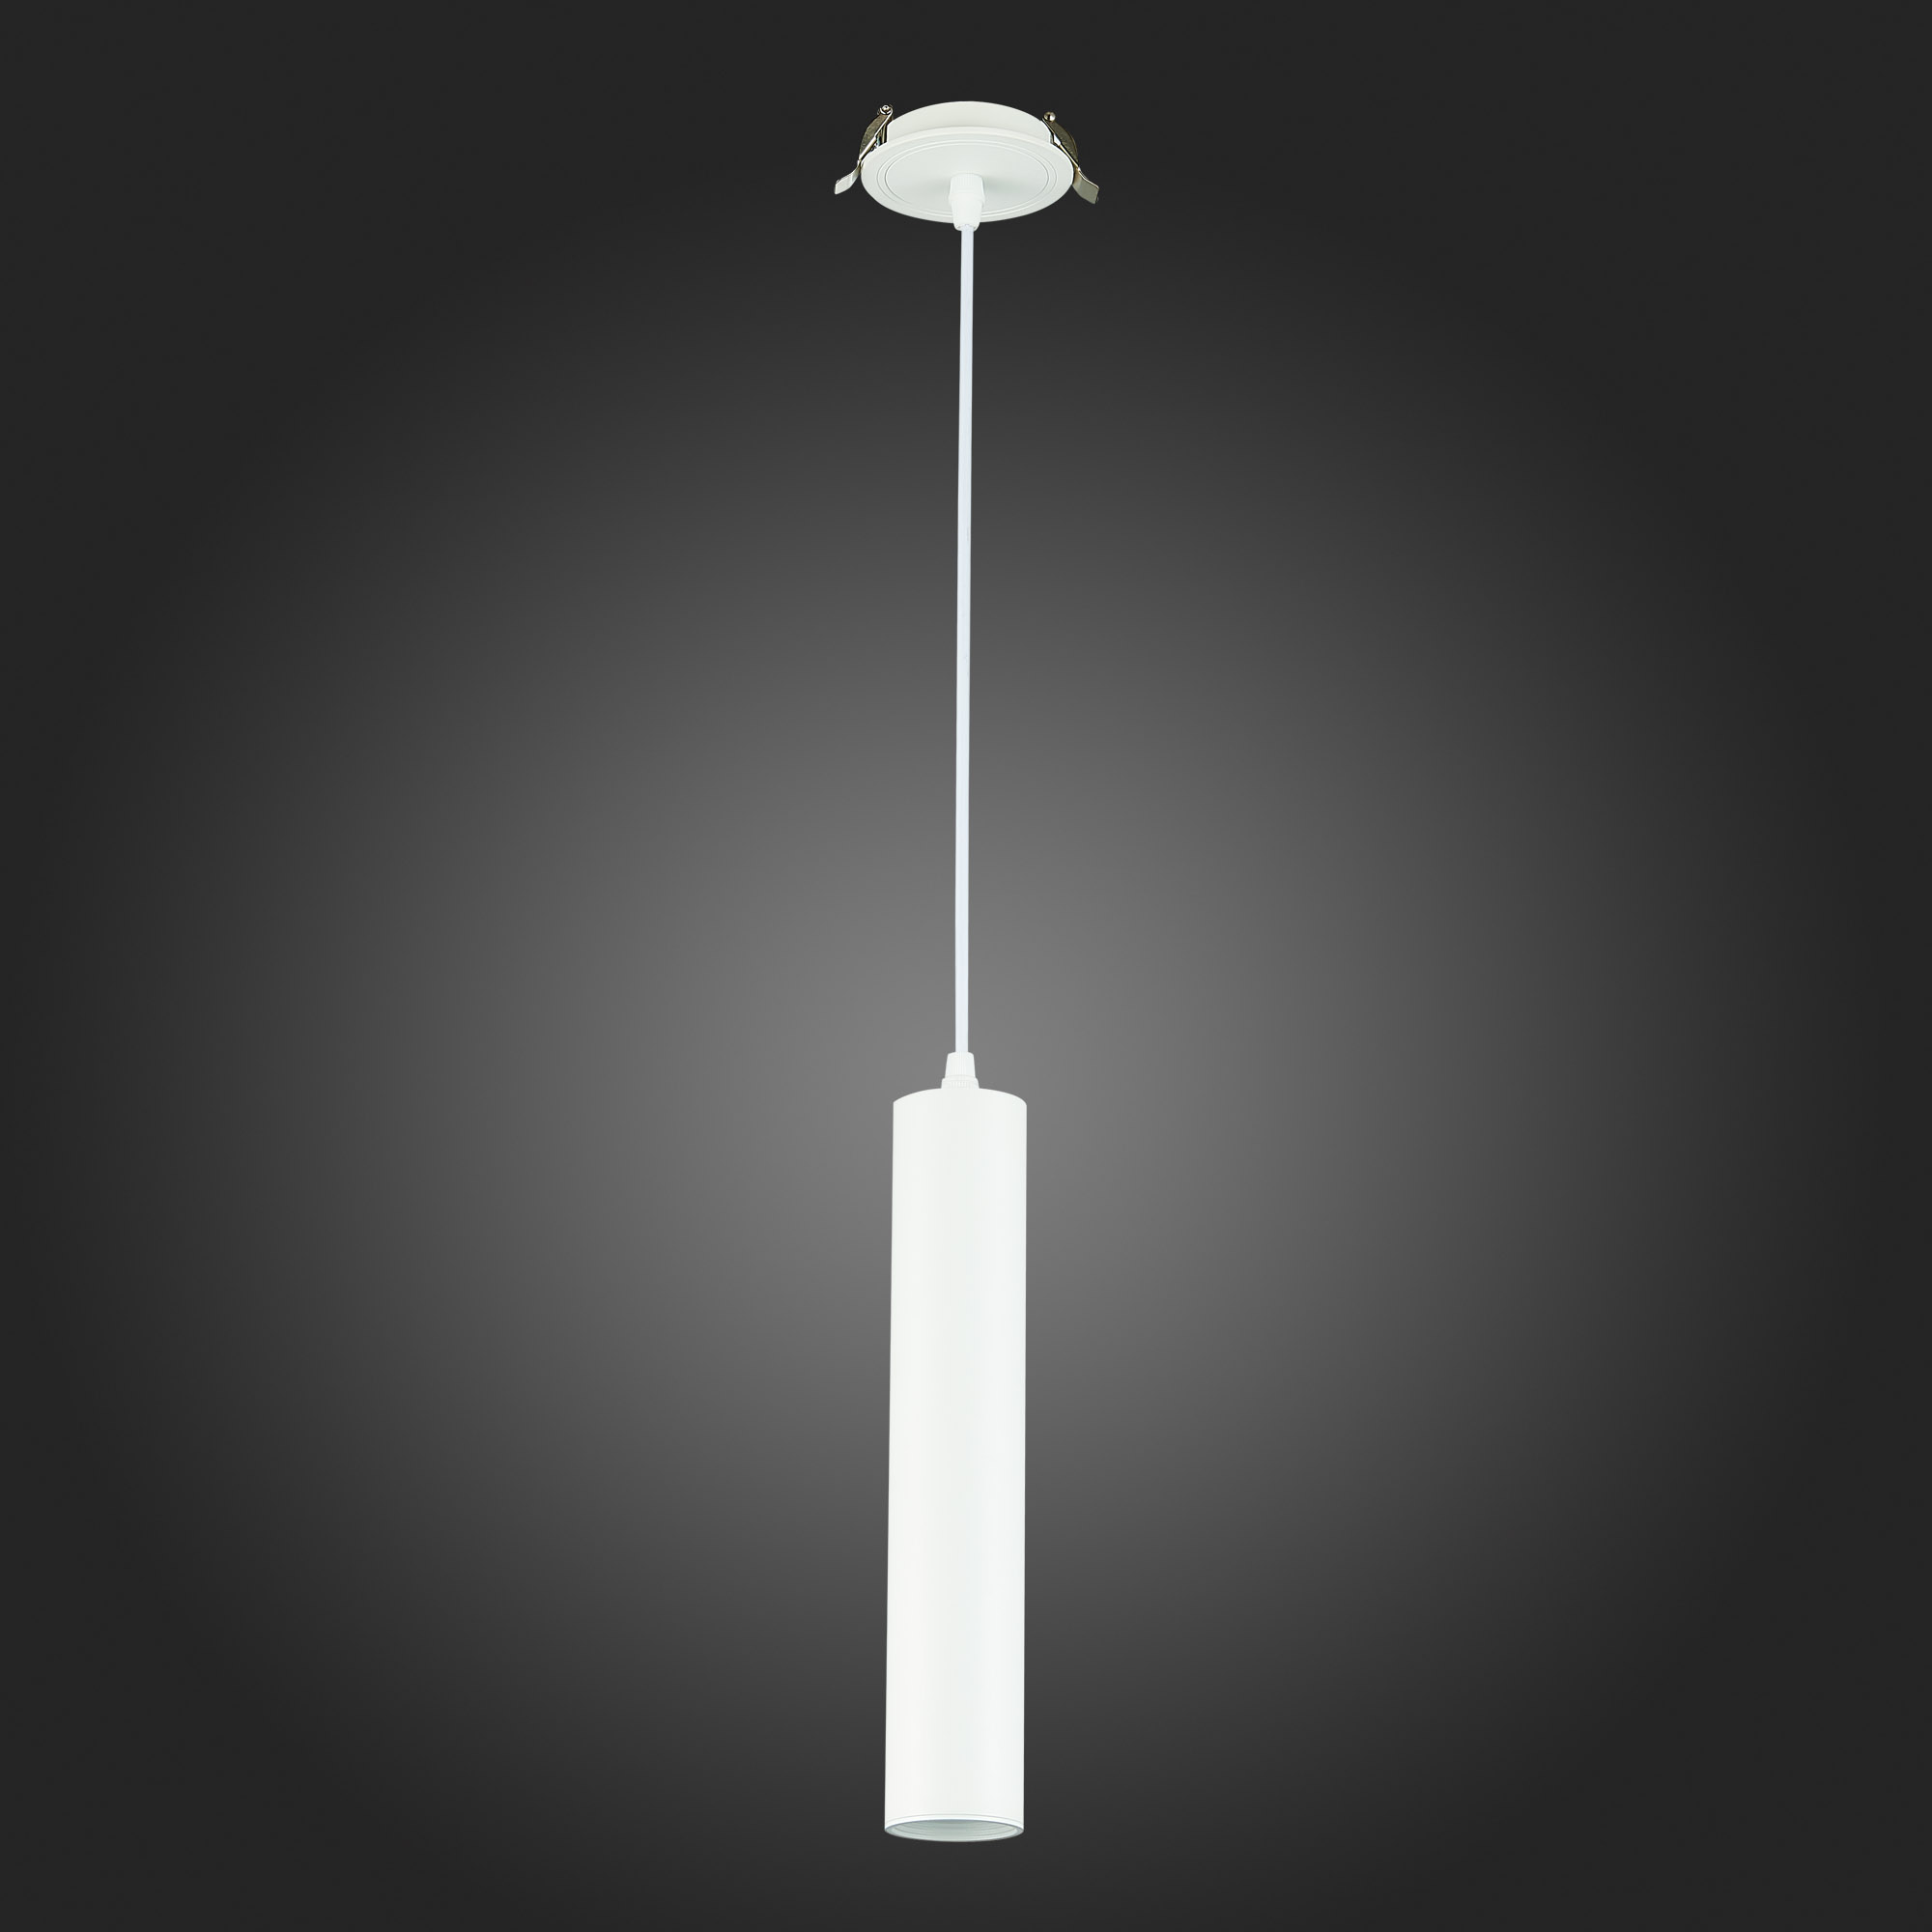 встраиваемый подвесной светильник st luce st151.508.01, артикул ST151.508.01